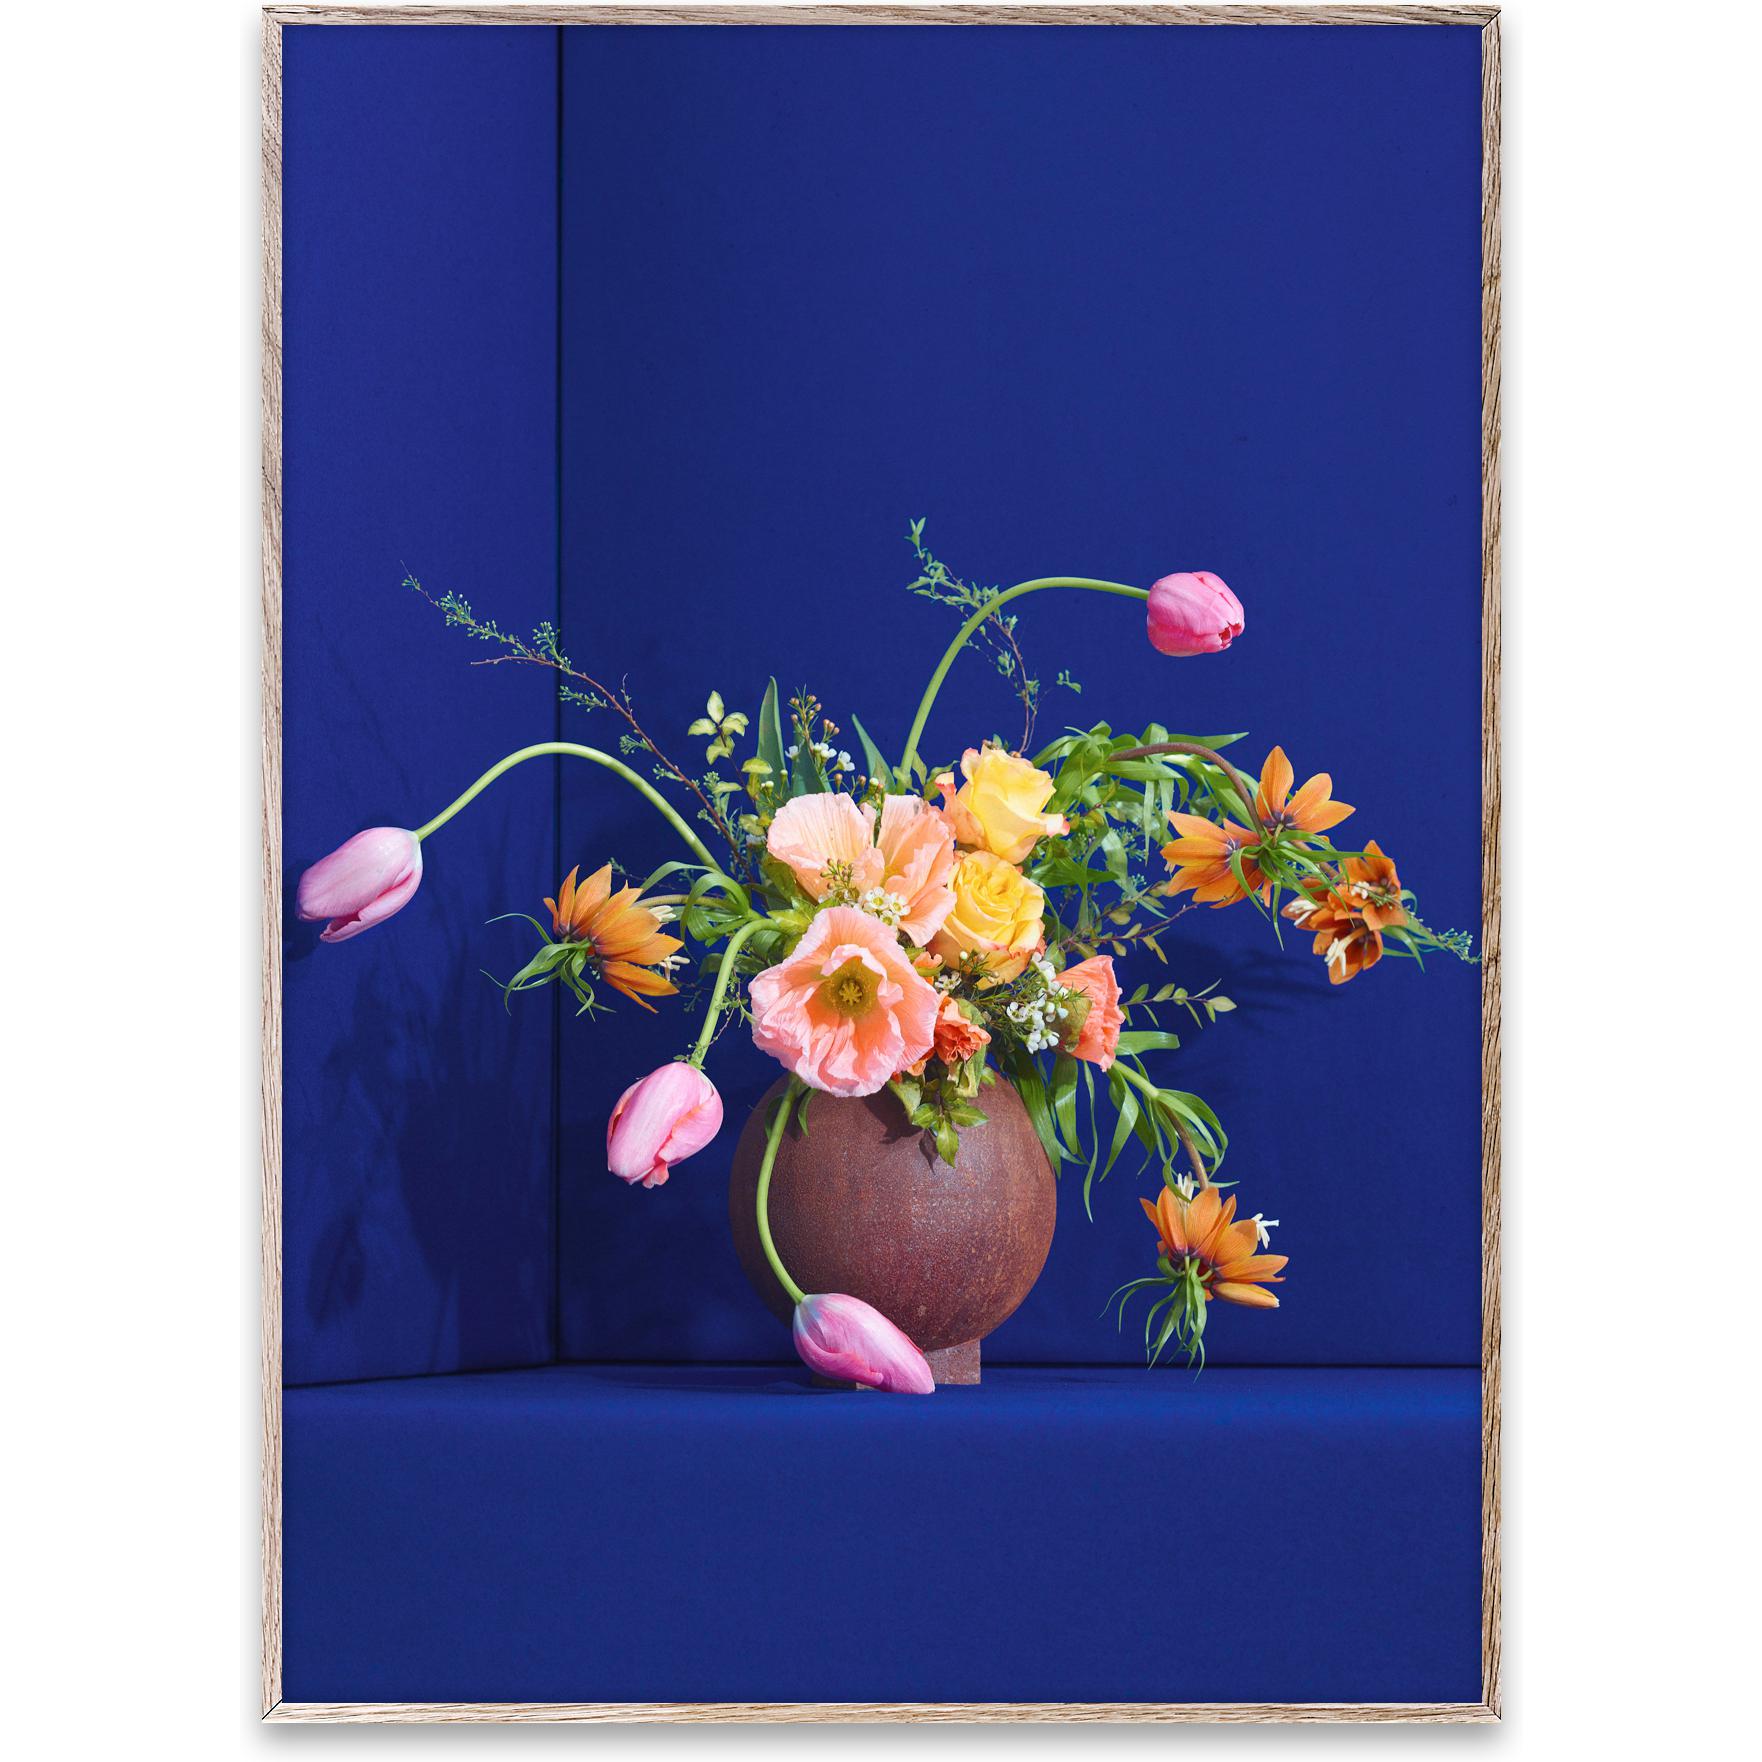 Paper Collective Flower 01 affisch 30x40 cm, blå